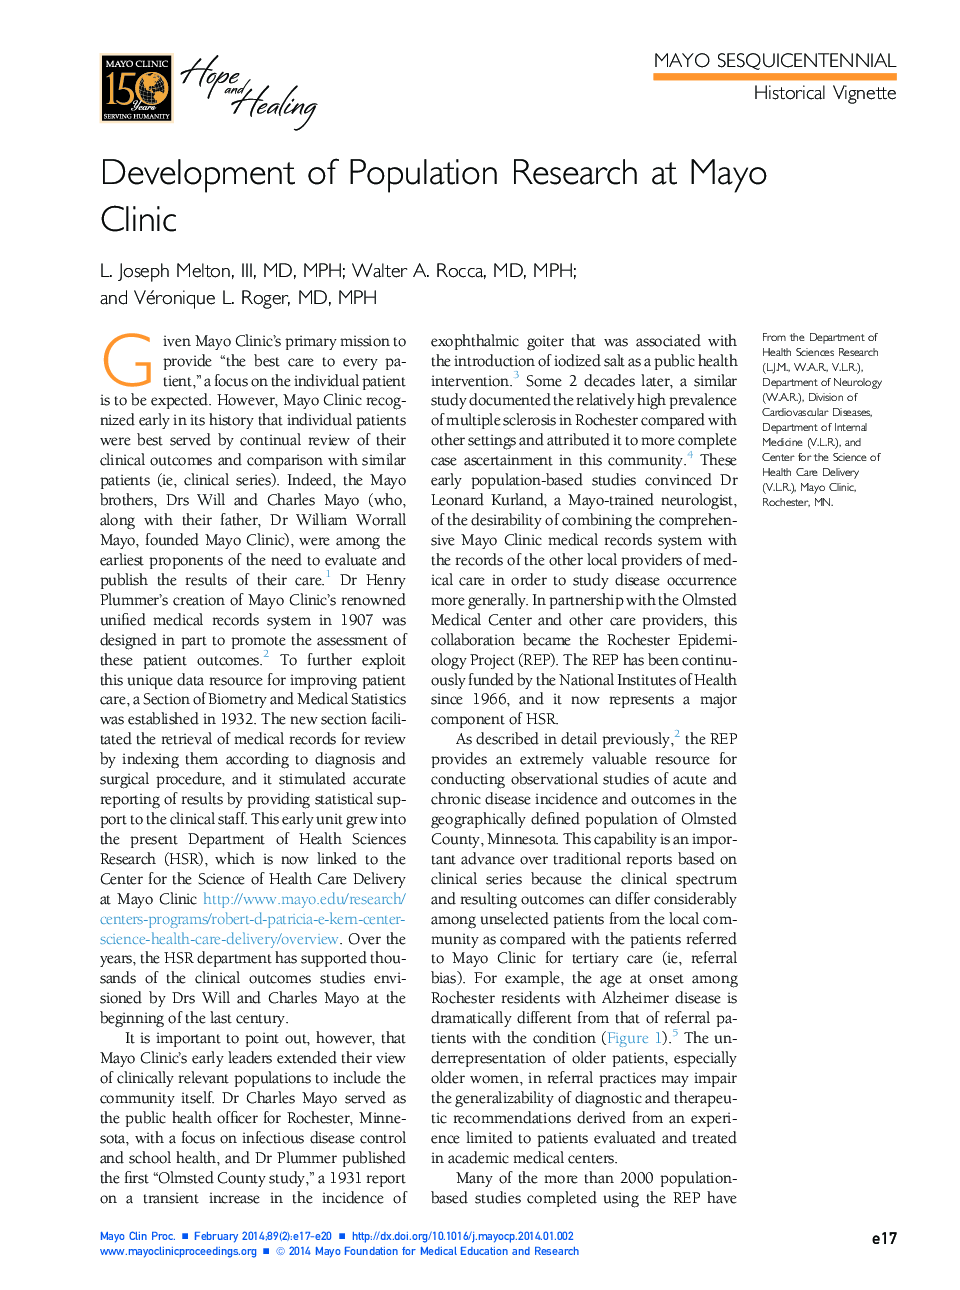 توسعه تحقیقات جمعیتی در کلینیک مایو 